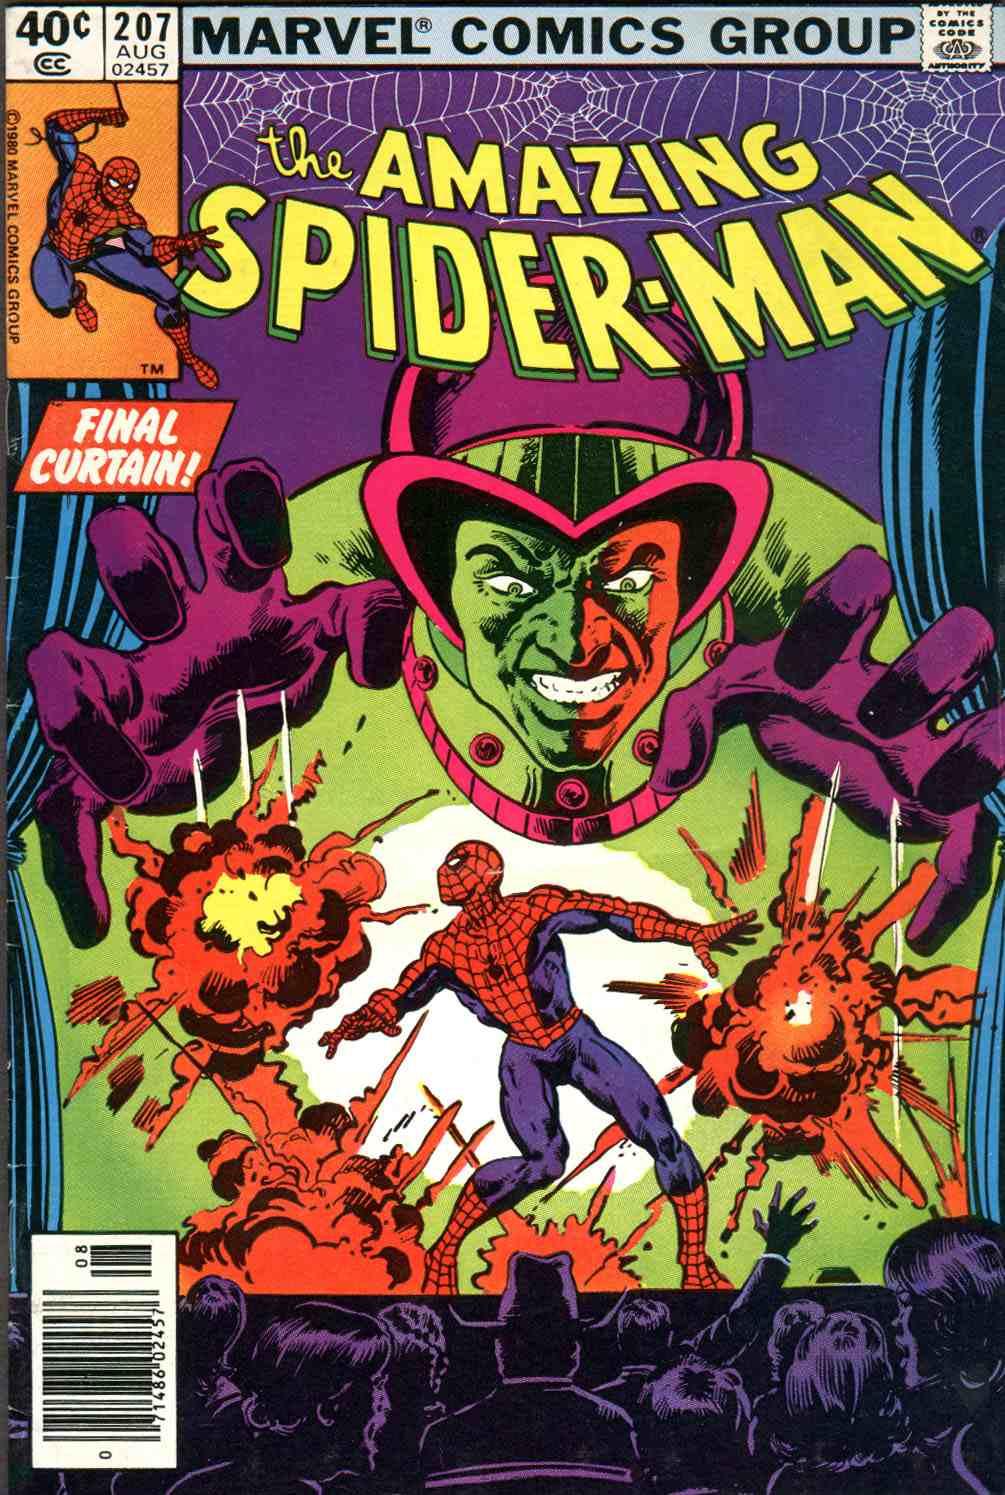 Amazing Spider-Man Vol. 1 #207